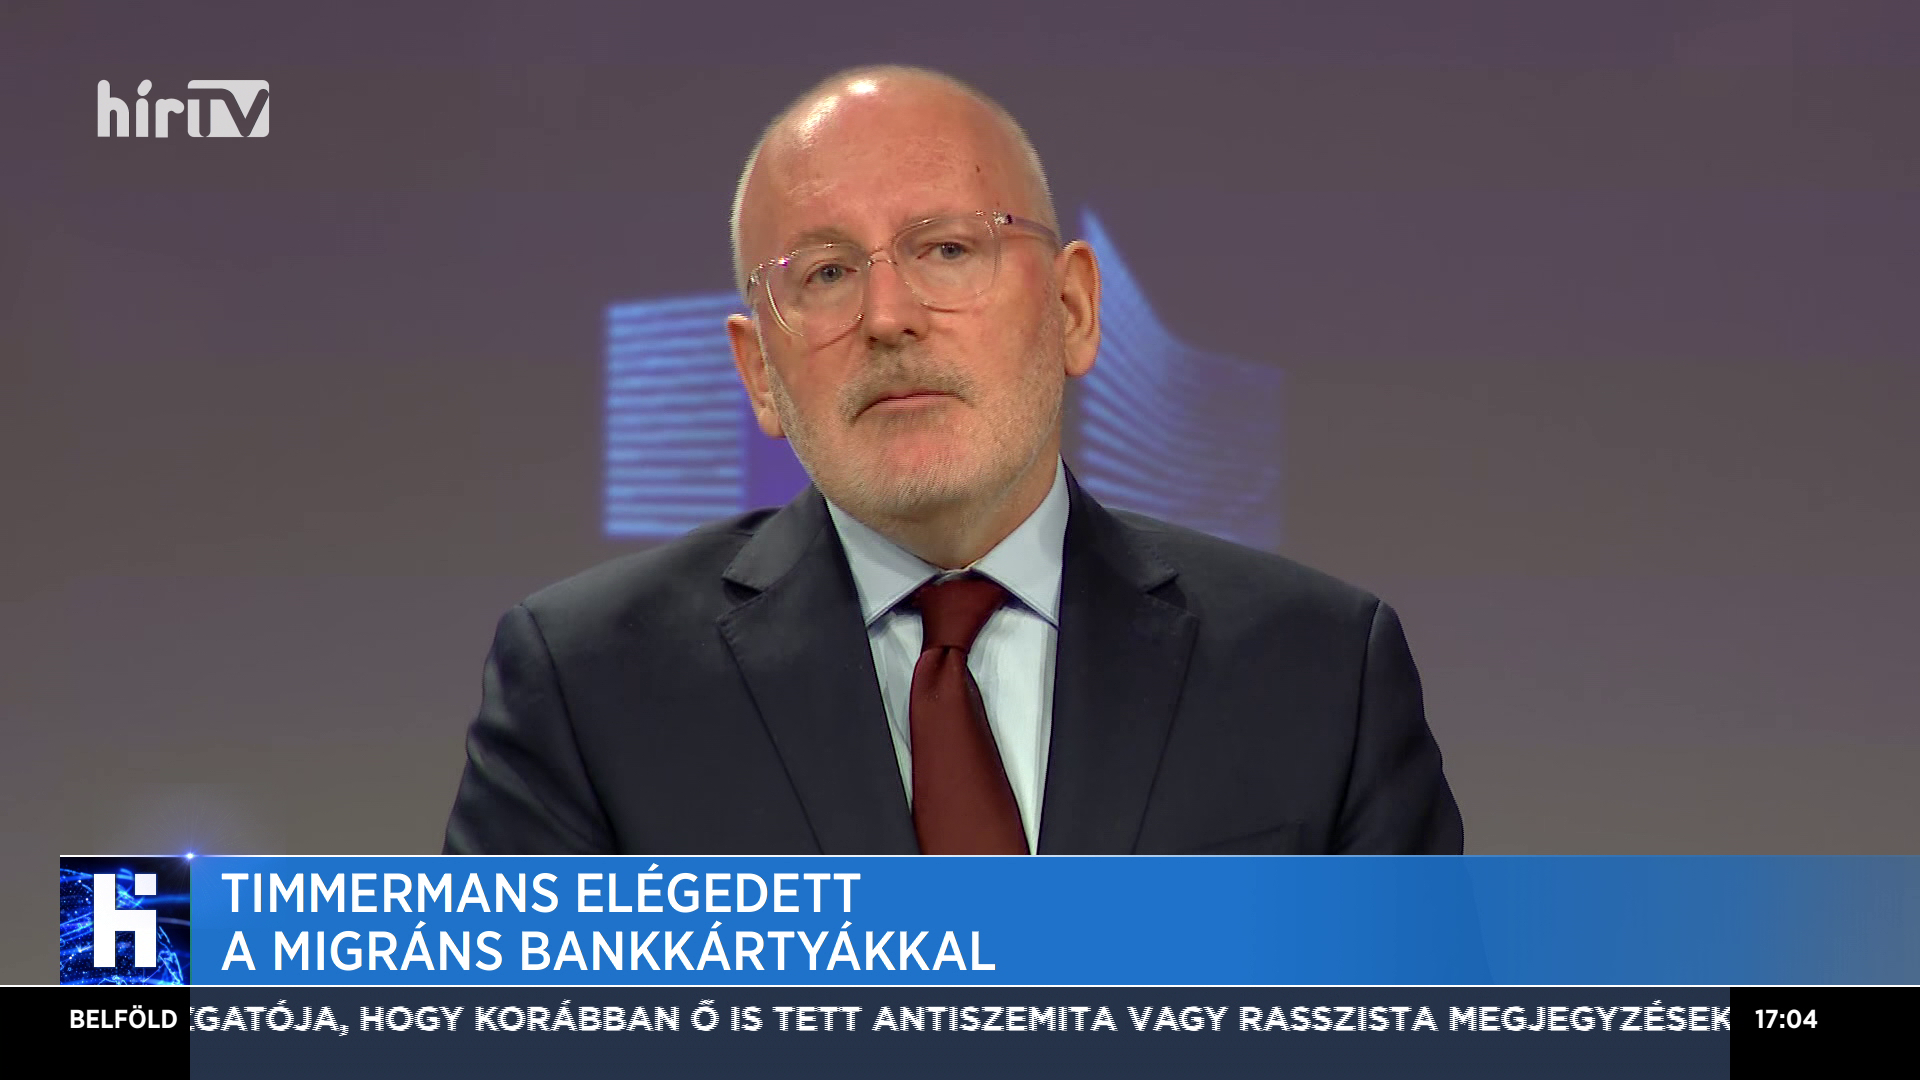 Timmermans elégedett a migráns bankkártyákkal